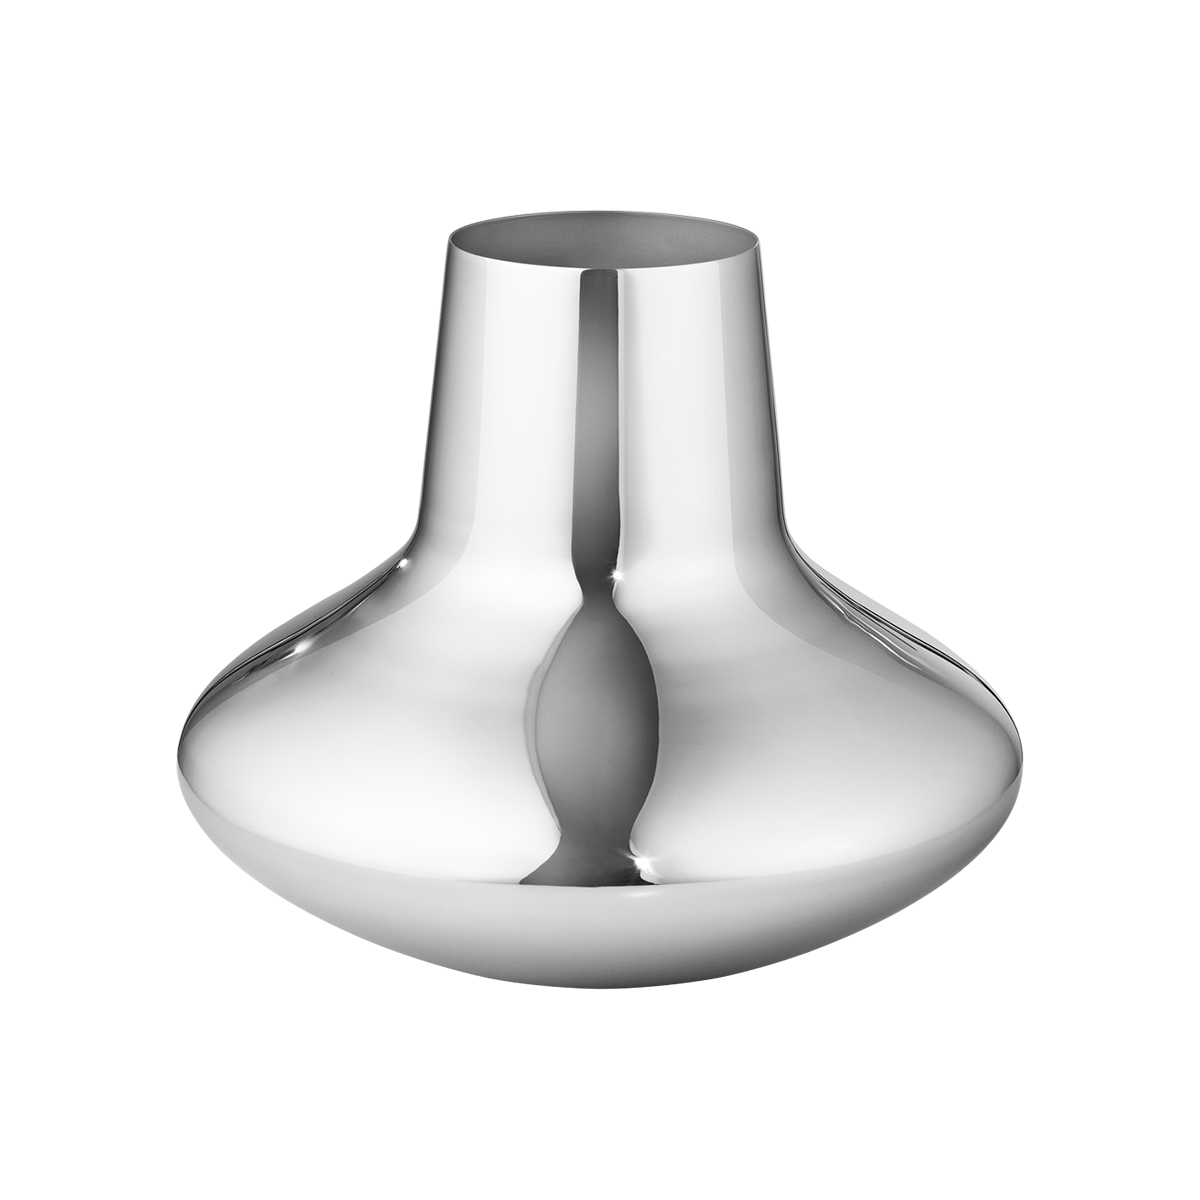 Georg Jensen KOPPEL Vase Stainless Steel, Medium